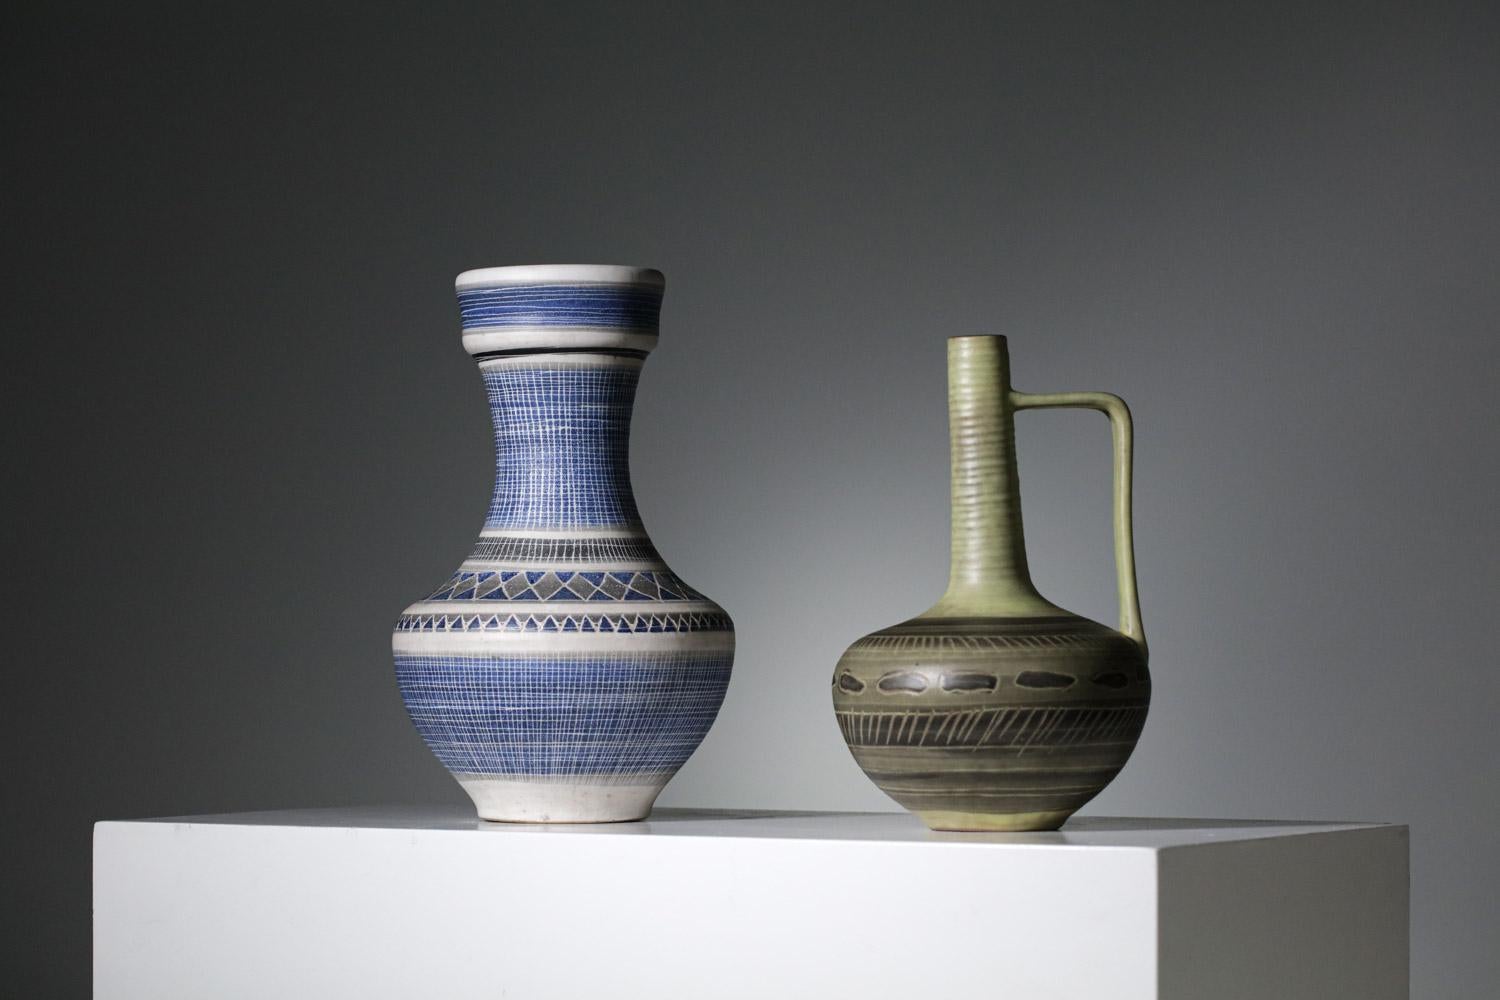 Vase aus den 50er Jahren von dem französischen Keramiker Marcel Guillot. Glasierte Vase mit grünen und braunen Farben. Geometrische Muster auf der gesamten Vase. Sehr schöner Vintage-Zustand (siehe Bilder).